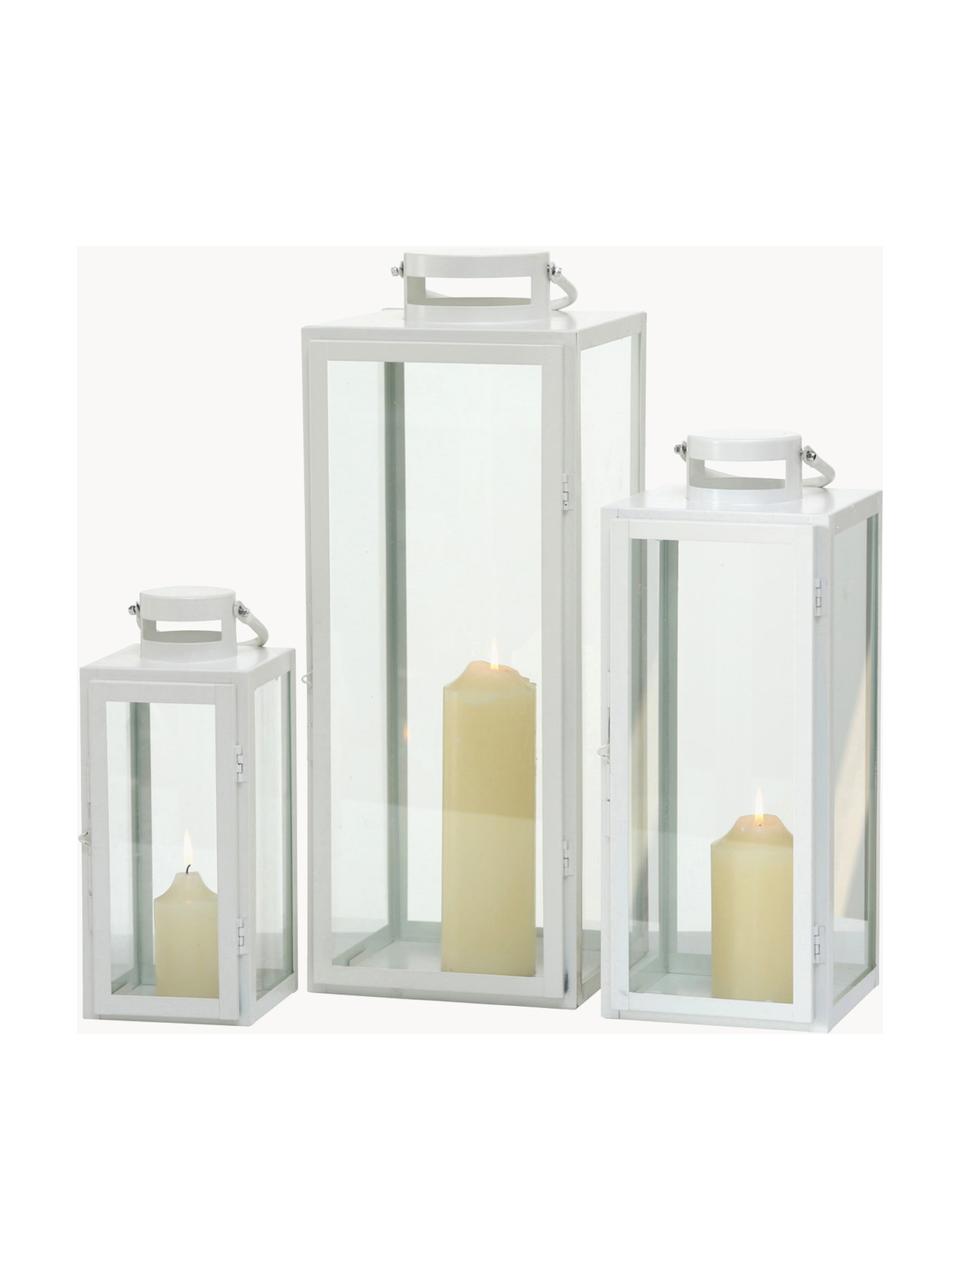 Lanternes Arana, 3 élém., Verre, métal, enduit, Blanc, transparent, Lot de différentes tailles